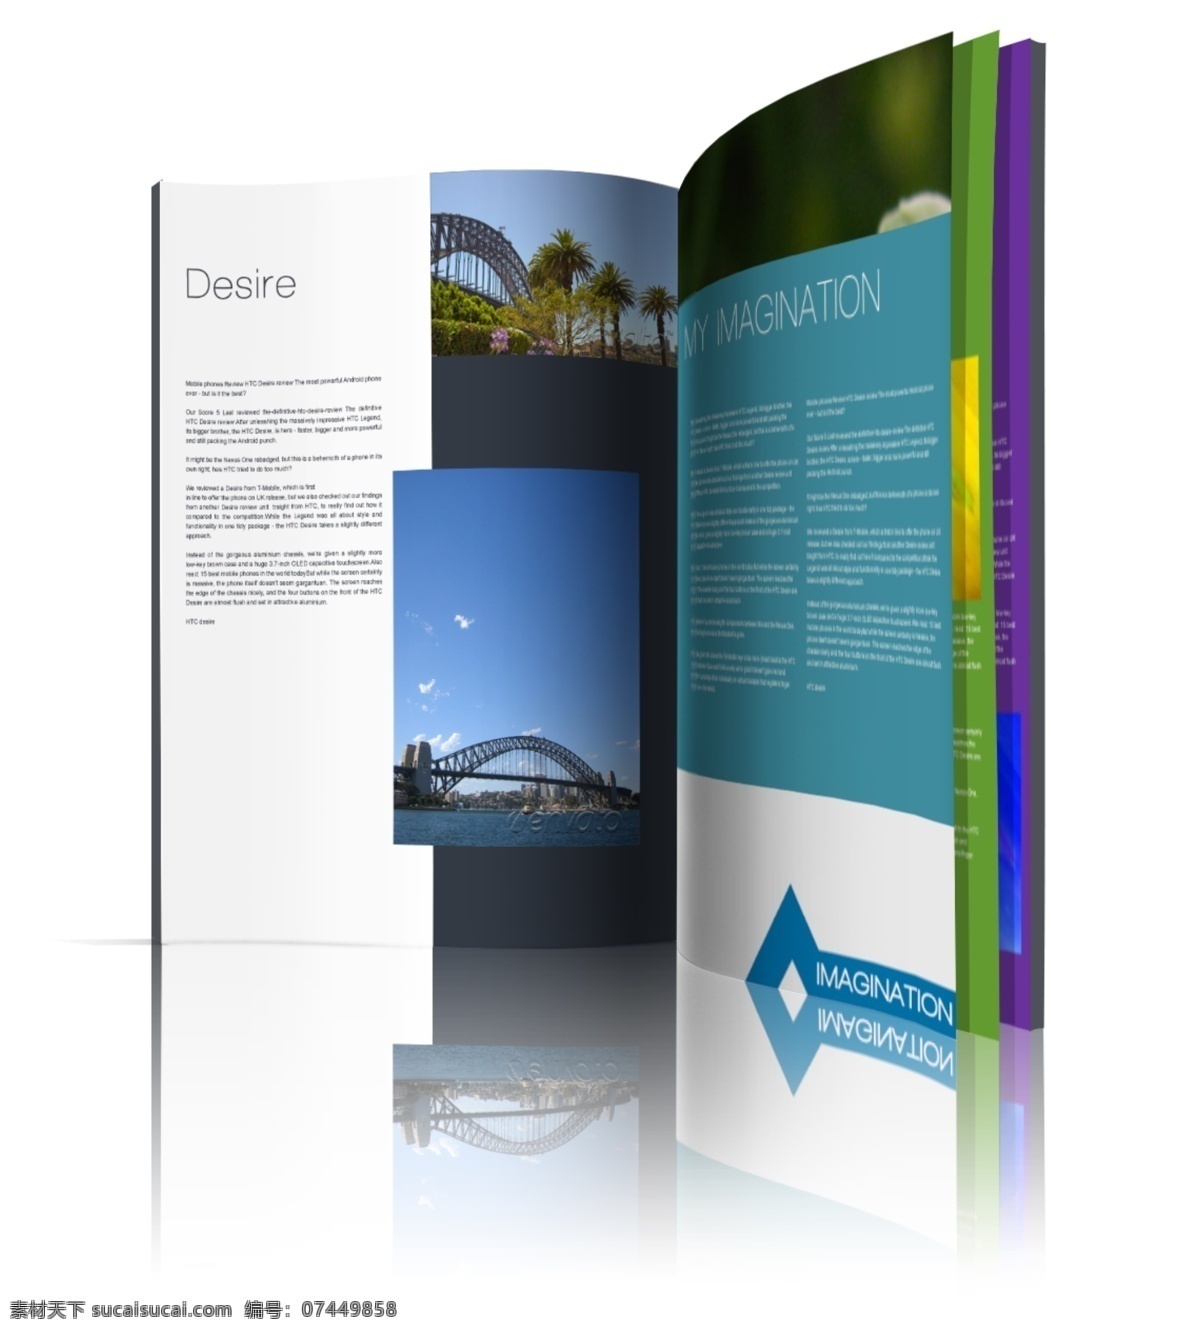 画册效果图 翻开的画册 效果图 psd素材 画册设计 广告设计模板 白色